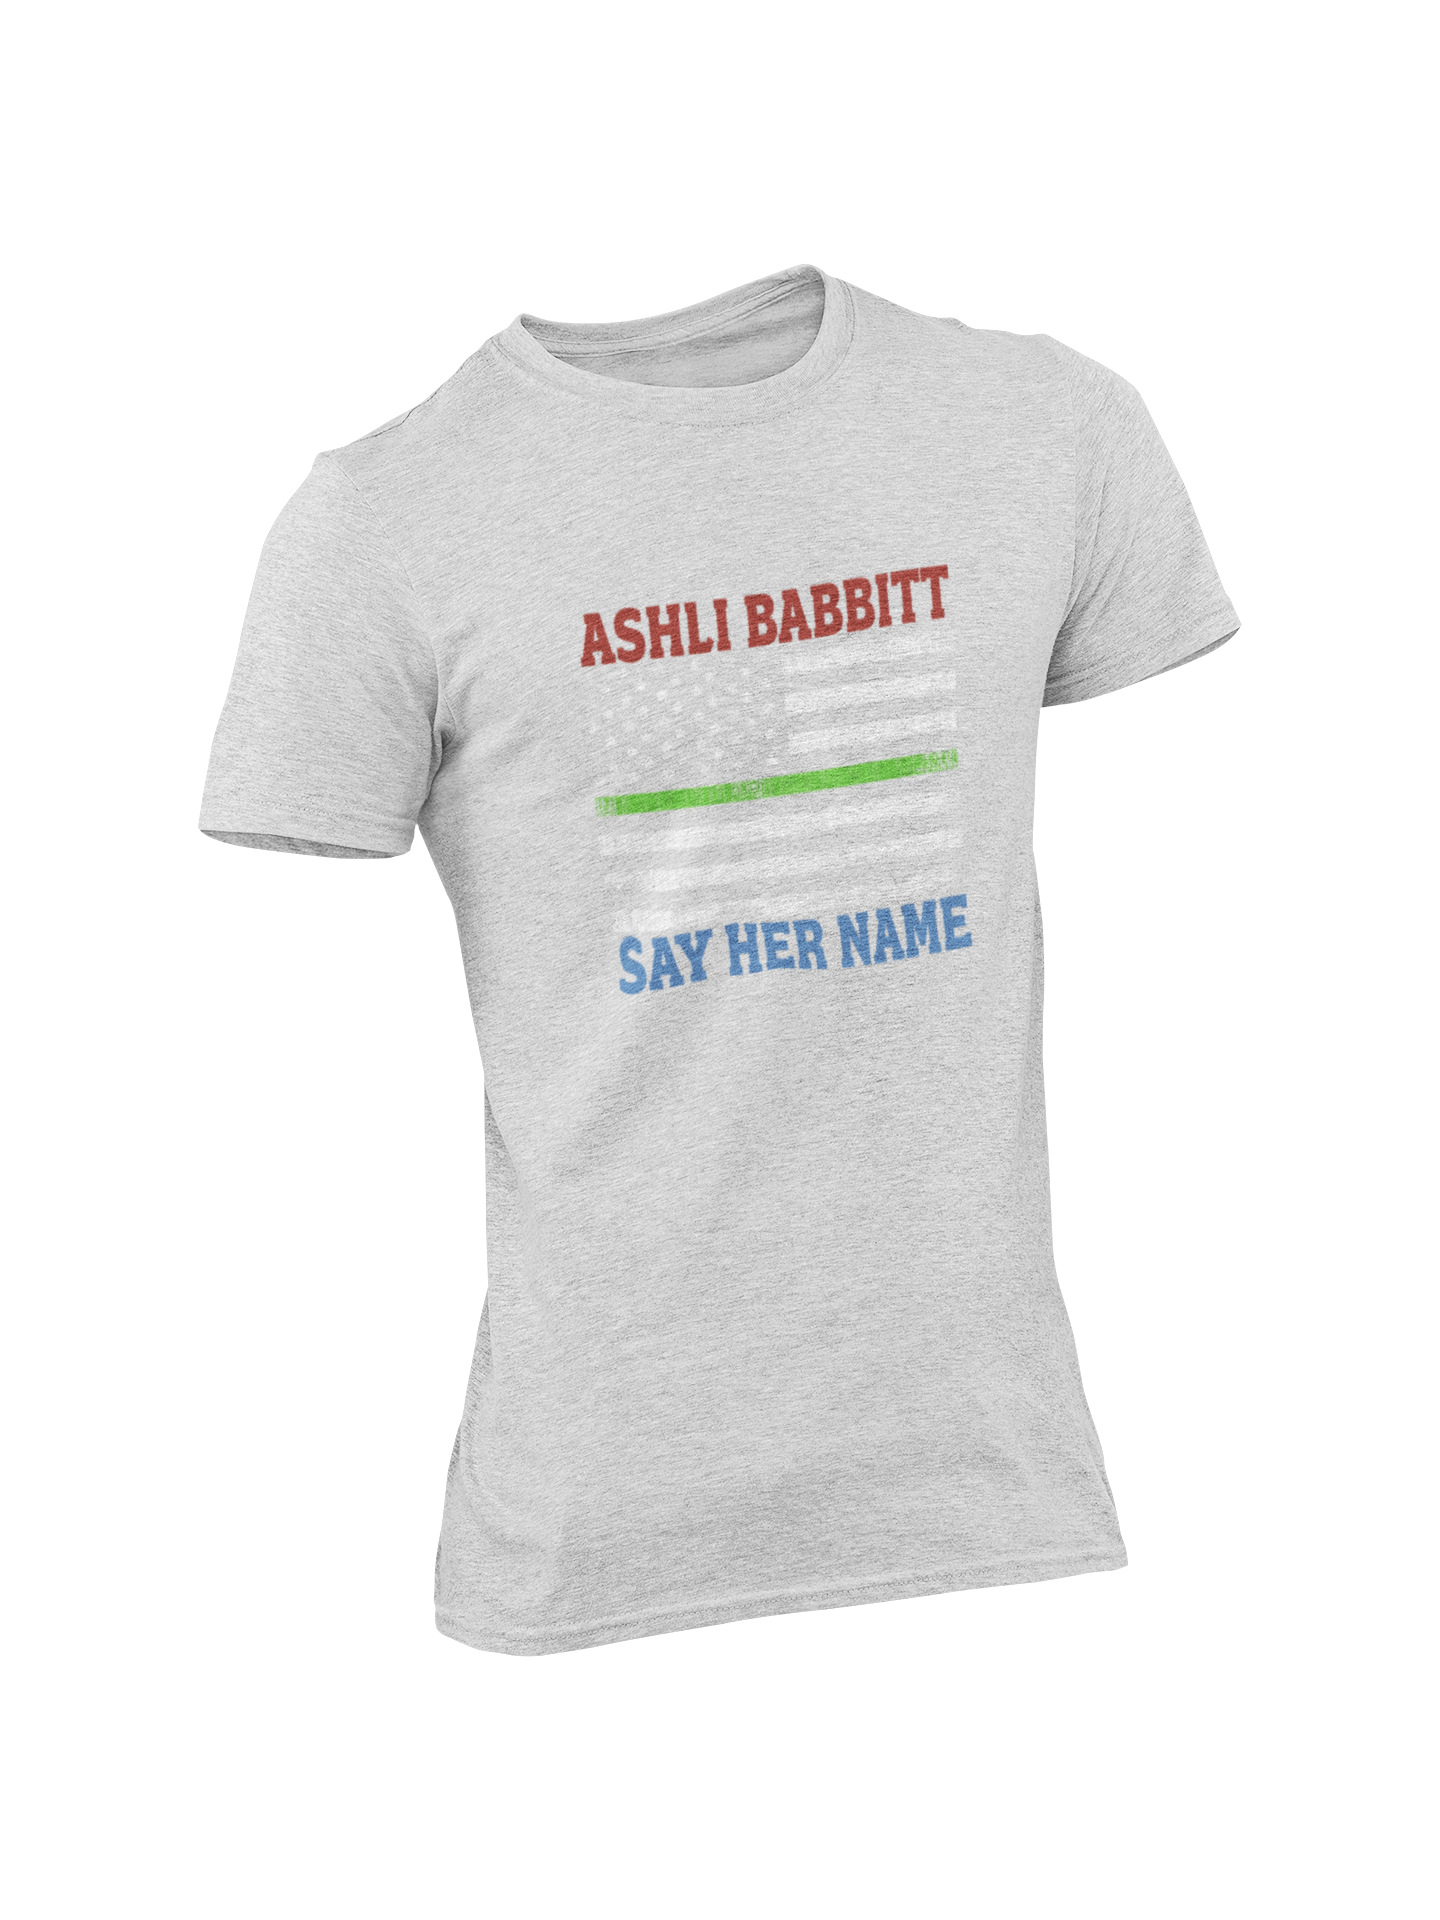 Ashli Babbitt T-Shirt